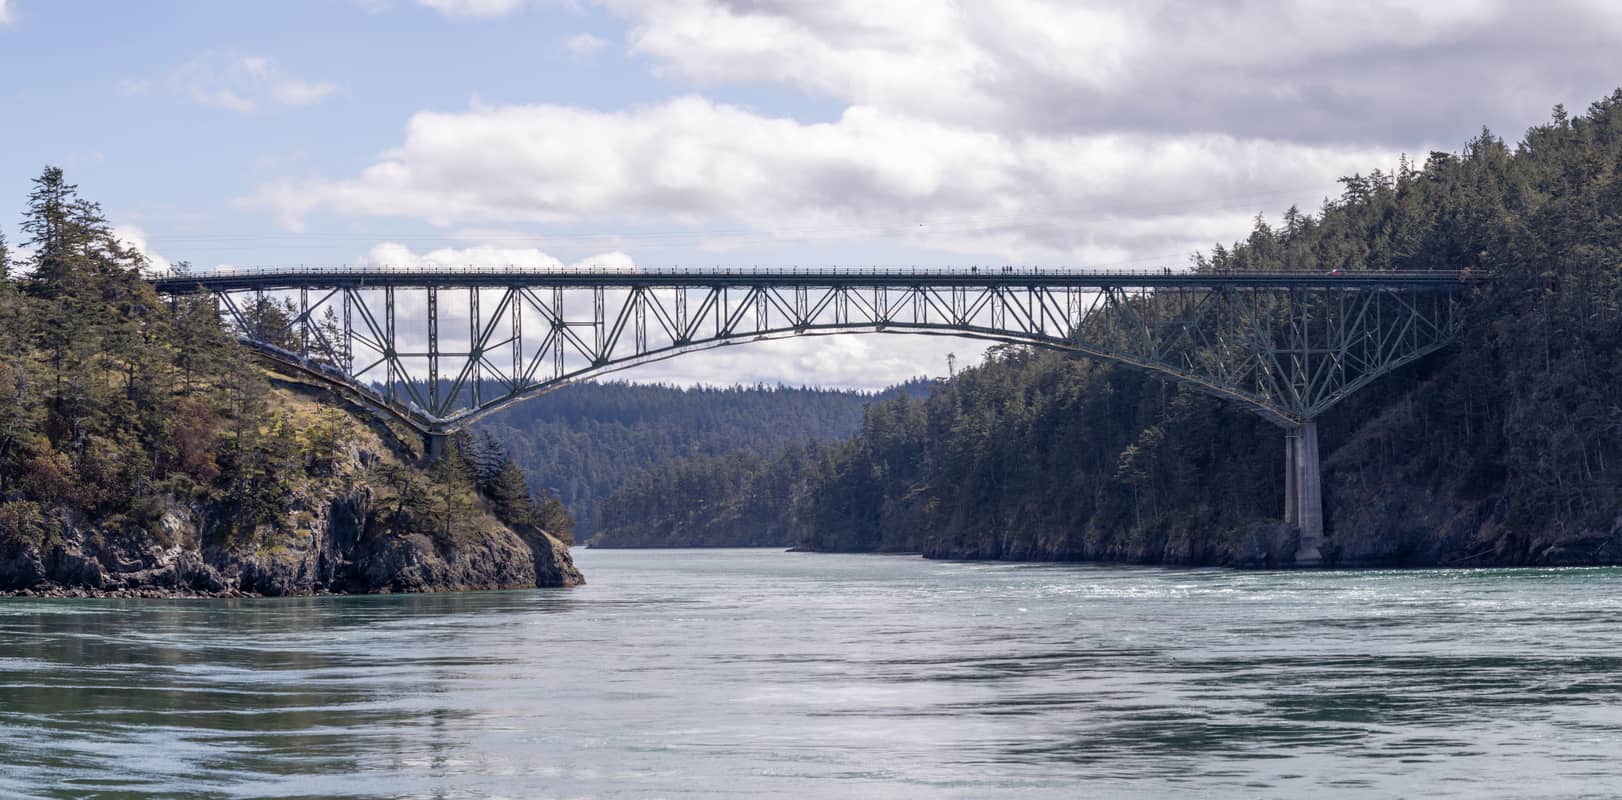 Large bridge spanning Deception Pass in Washington State